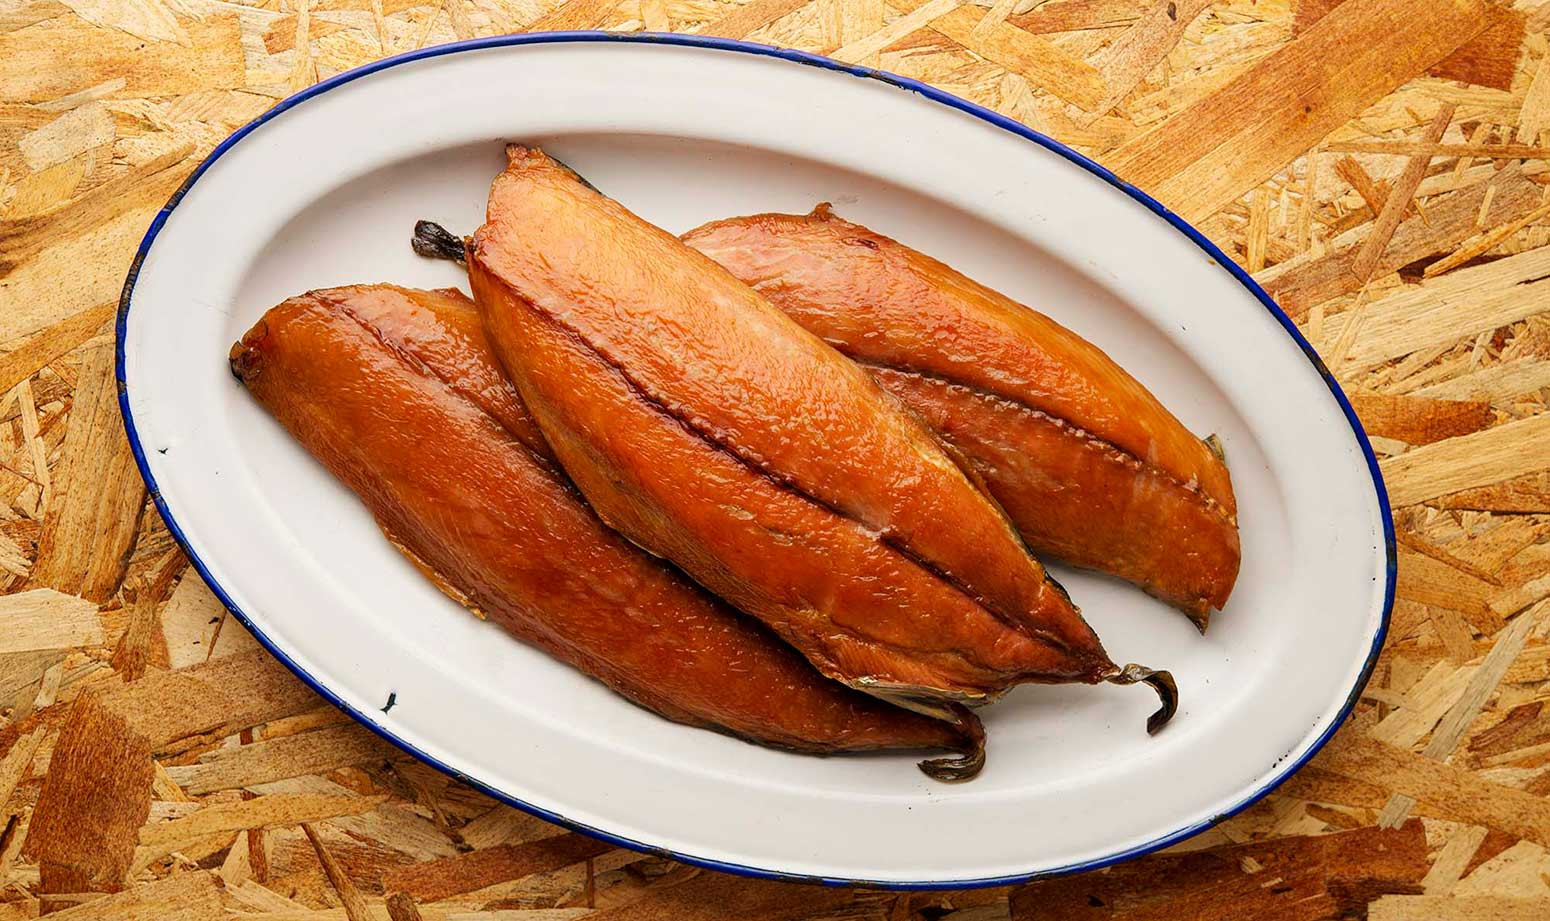 Bonita Fish Recipes Awesome How to Cook Bonito Fish Smoked Bonito Recipe and Cooking